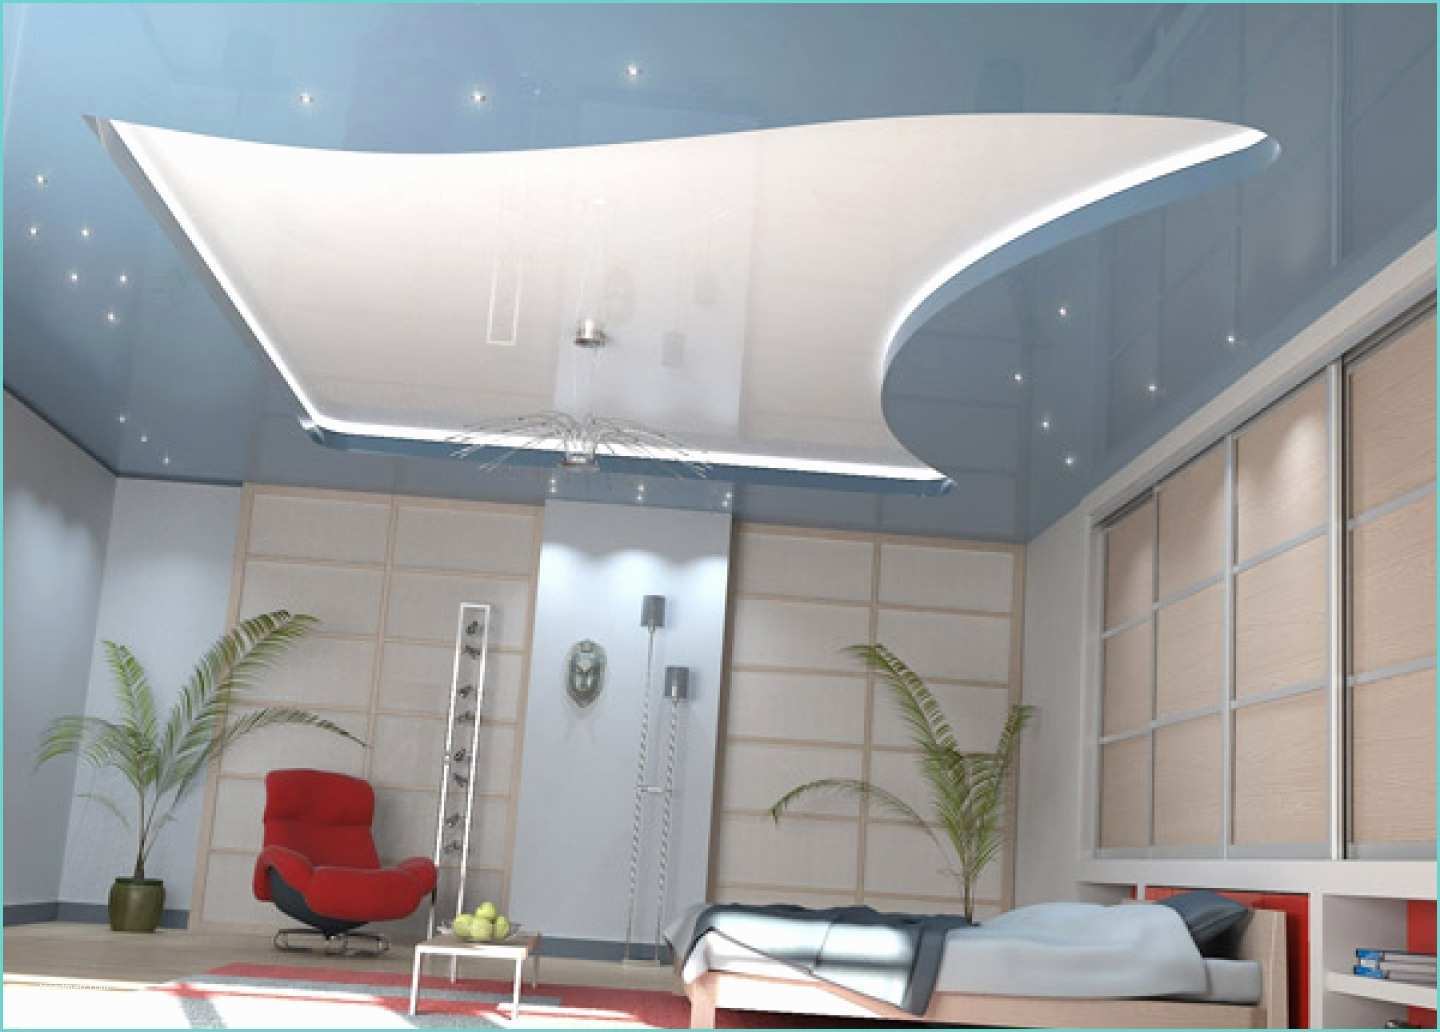 Plaster Of Paris False Ceiling Designs False Ceiling Design for Bed Room Home Bo